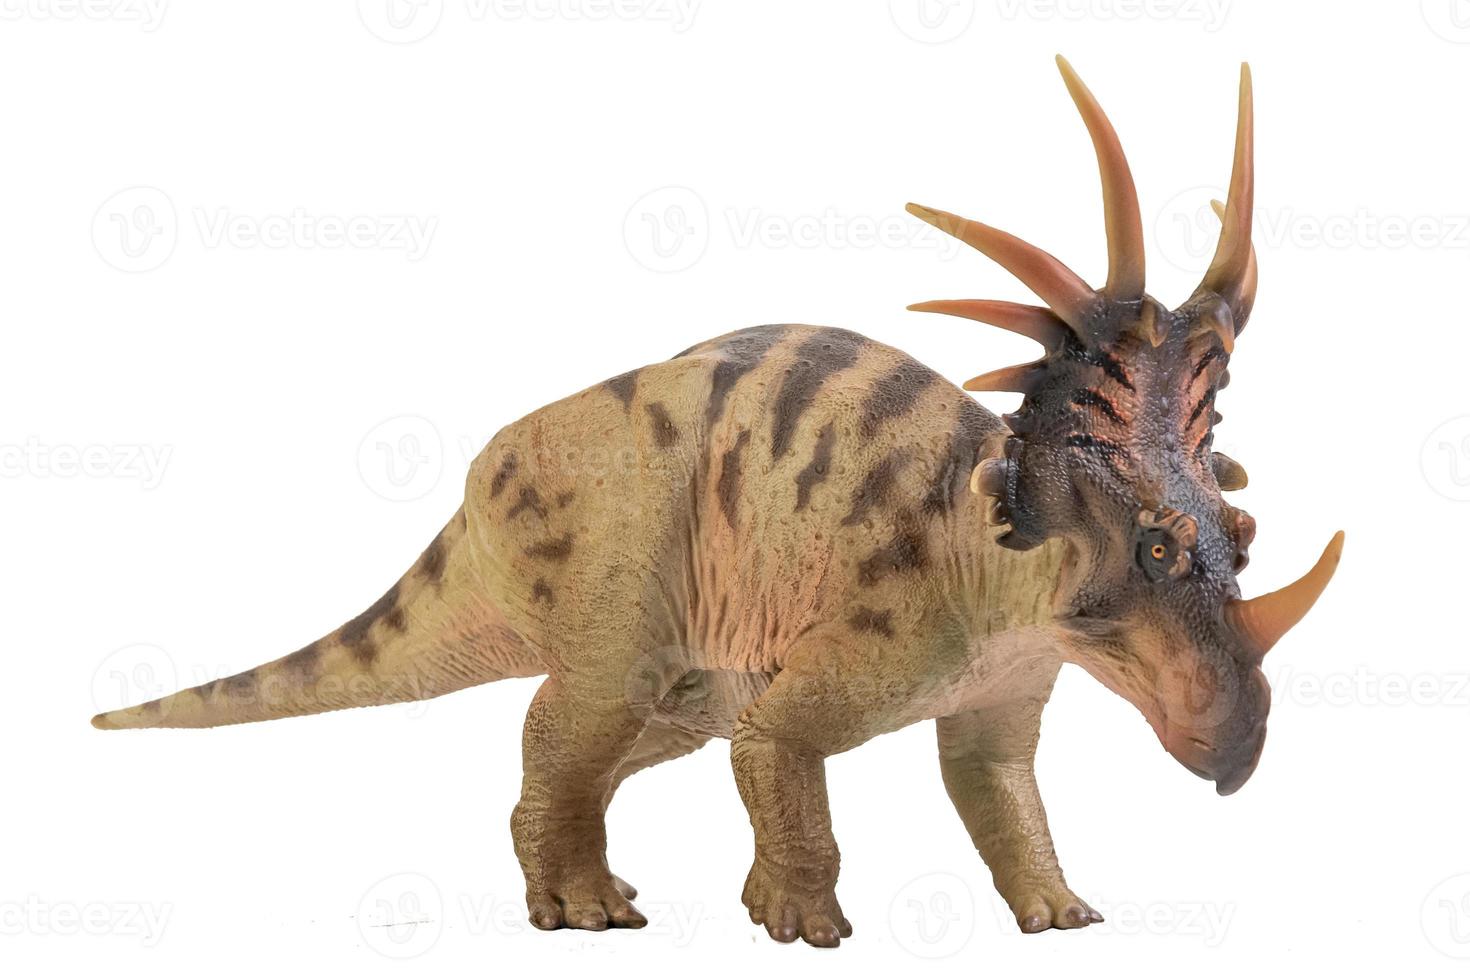 styracosaurus dinosaurie på isolera bakgrund foto